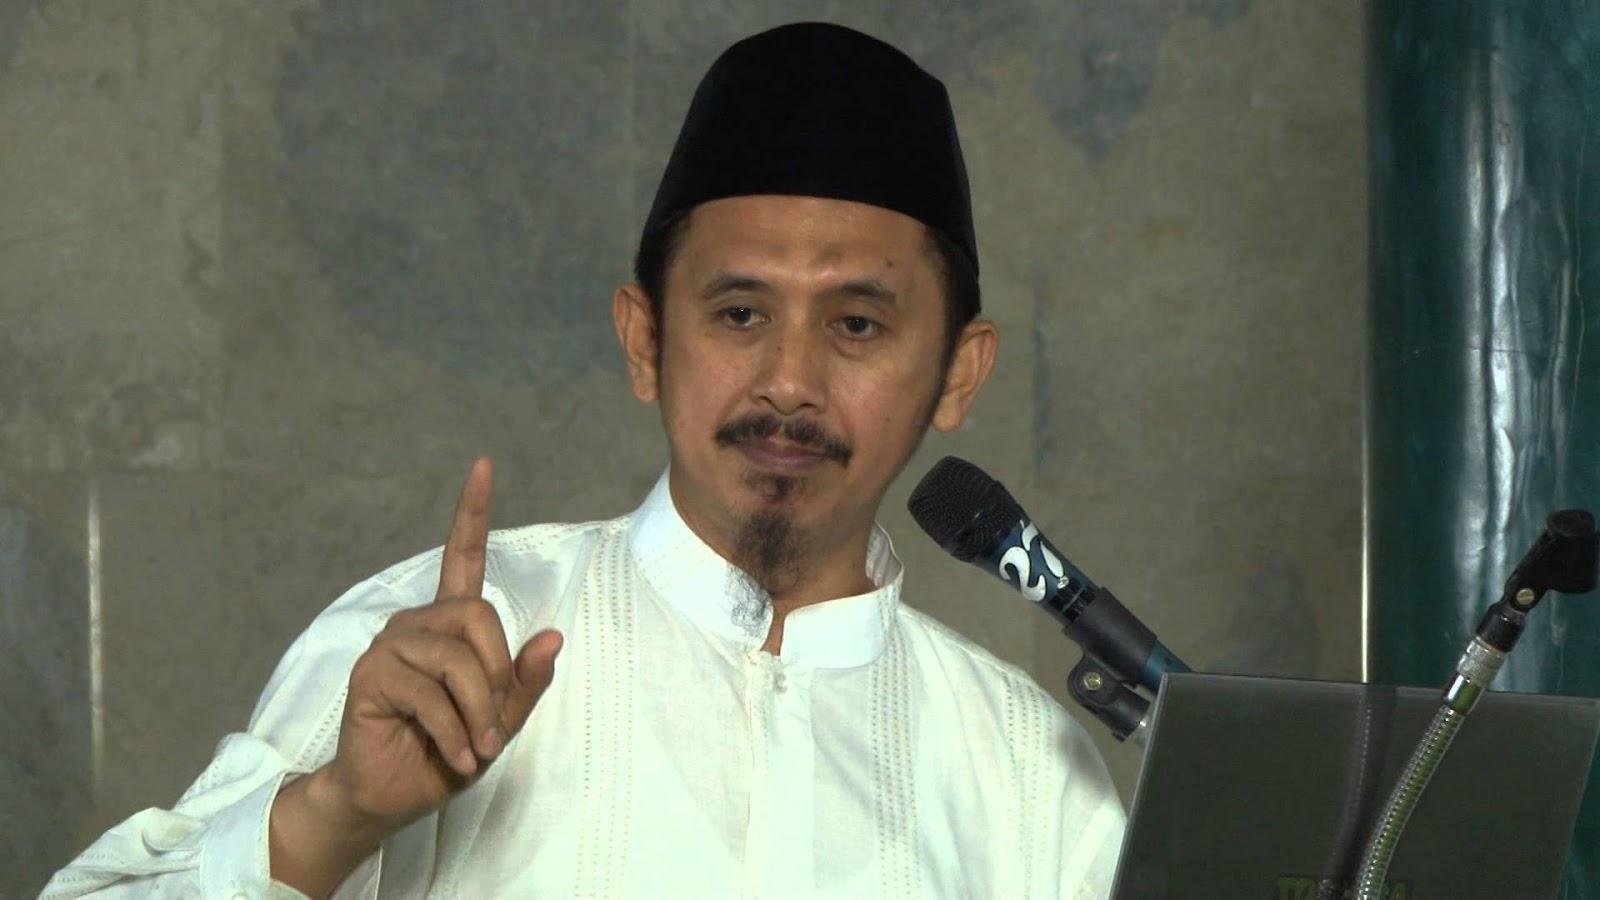 Ketua Umum Wahdah Islamiyah: Islam Agama Cinta, Selesaikan Masalah dengan Cinta